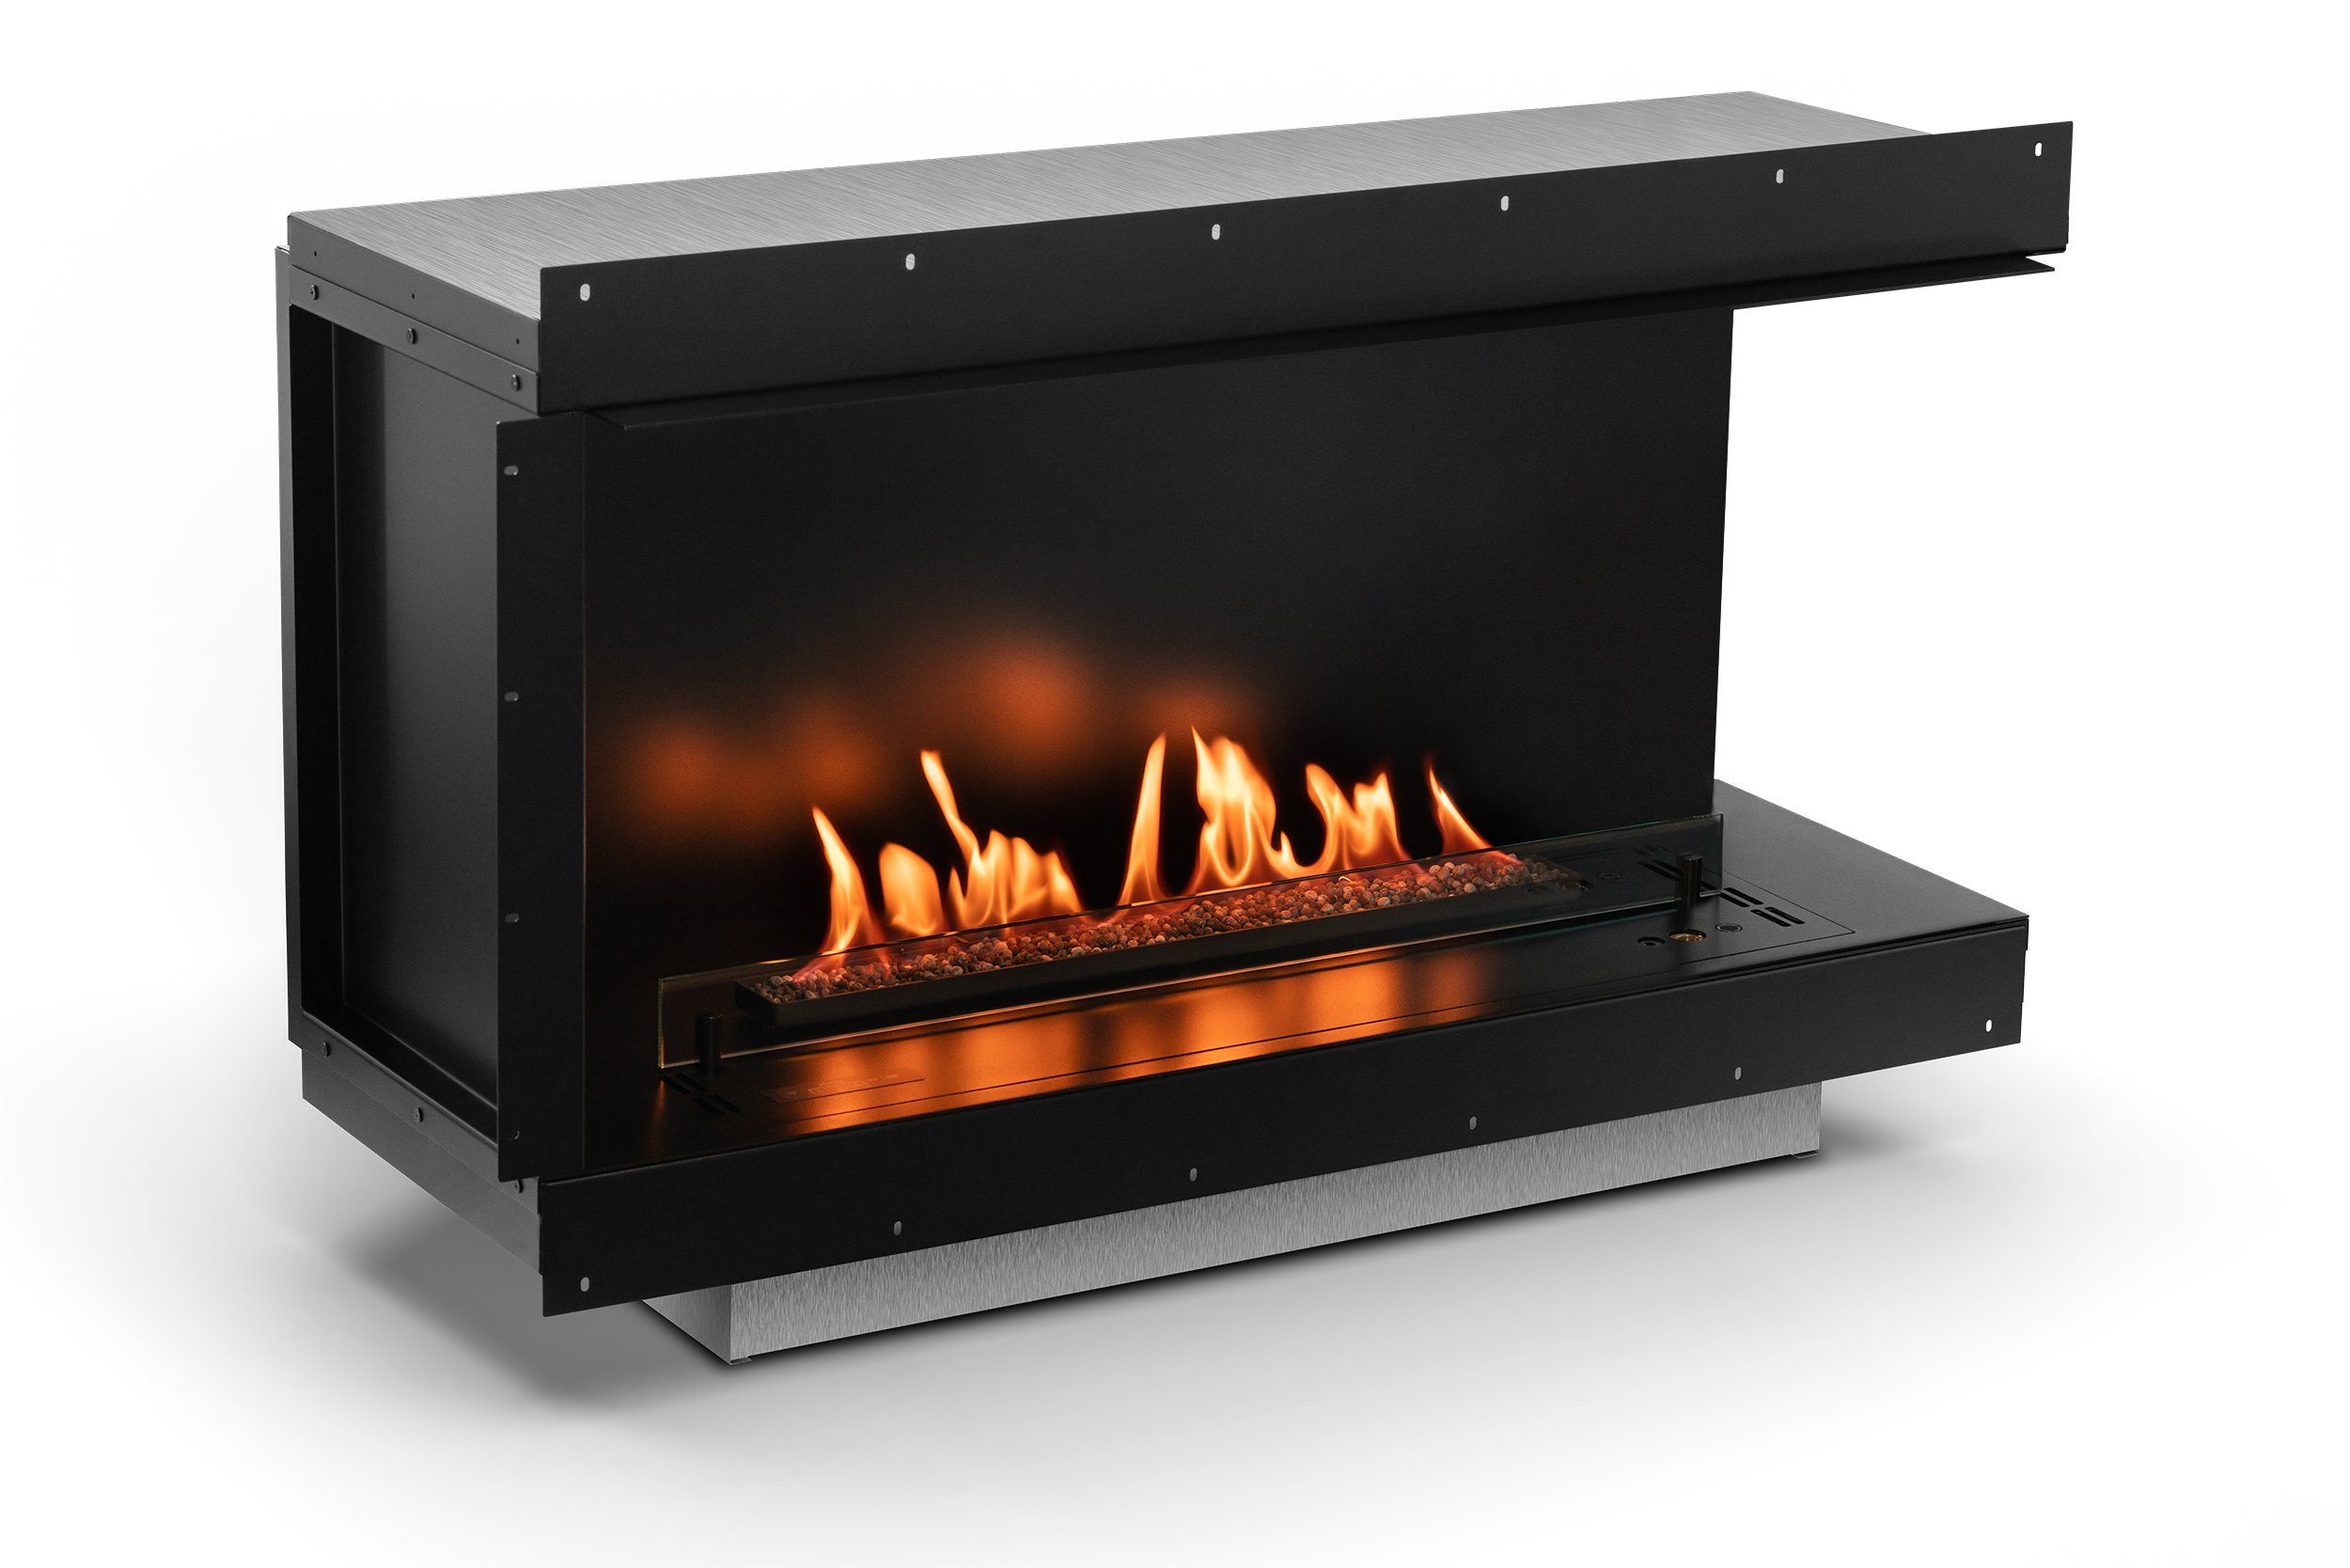 PLANIKA Echtfeuer-Dekokamin Ethanolkamin Neo Fireplace, Sicherheit mit TÜV Automatikbrenner, geprüfte Heizleistung